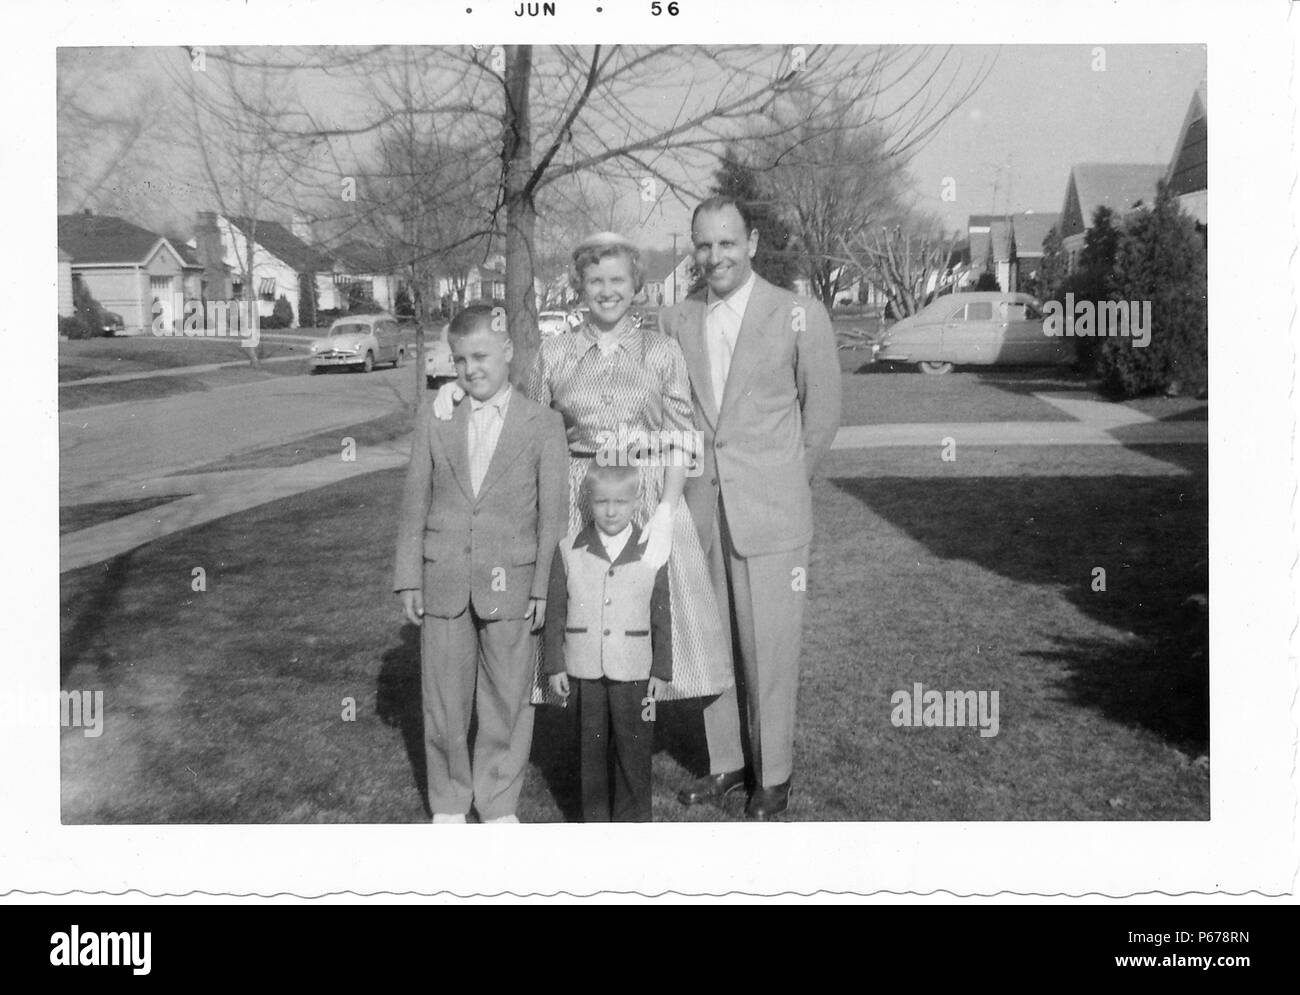 Schwarz-weiß Foto, zeigt eine Familie, in der vollen Länge, zusammen Posieren im Freien, der Mann mittleren Alters, mit einem zurücktretenhaarstrich, trägt einen hellen Anzug und steht mit einem kurzhaarigen Frau, trug einen Rock, Bluse und Handschuhe, und zwei Jungen, beide trugen Anzüge, die Kleinere trägt eine zweifarbige Jacke, mit Bäumen, Oldtimer und s-Häuser im Hintergrund sichtbar, wahrscheinlich in Ohio, Juni, 1956 fotografiert. () Stockfoto